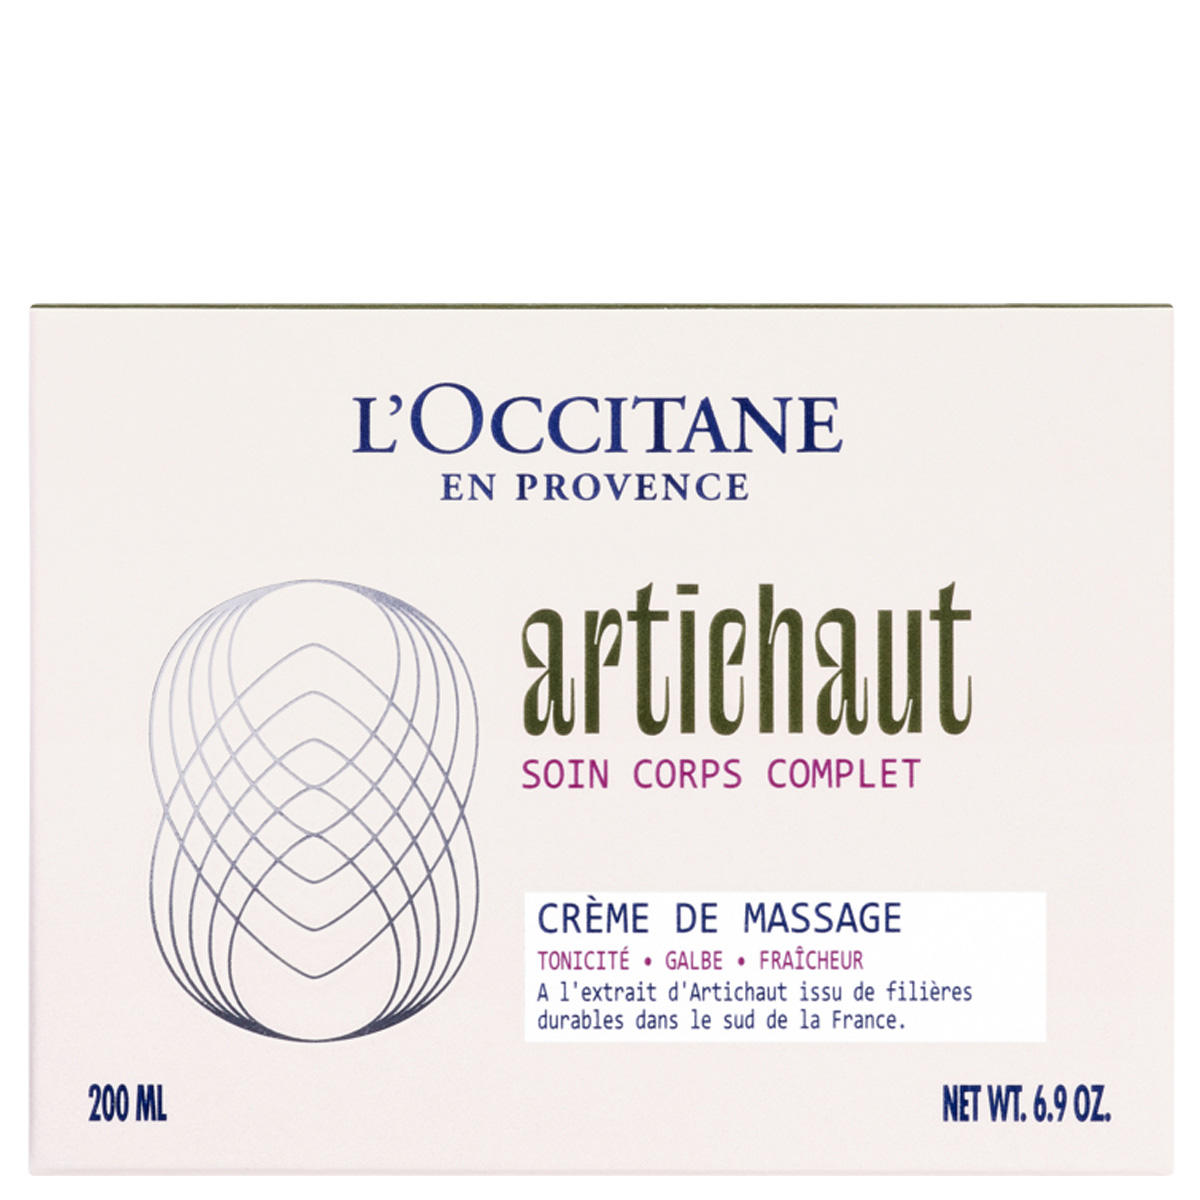 L'Occitane Artichaut Crème de massage body cream 200 ml - 4